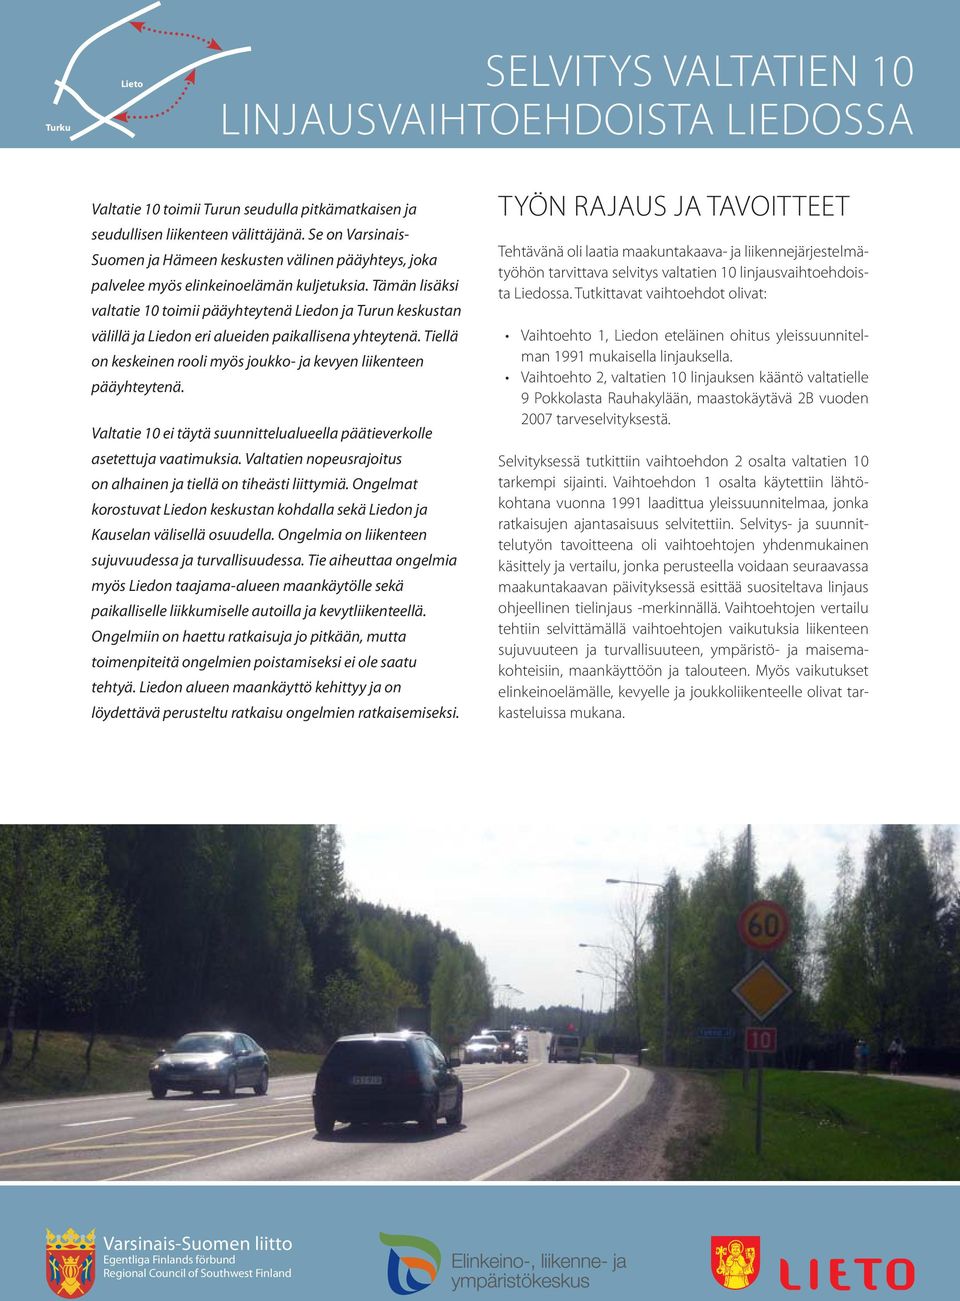 Tämän lisäksi valtatie 10 toimii pääyhteytenä Liedon ja Turun keskustan välillä ja Liedon eri alueiden paikallisena yhteytenä. Tiellä on keskeinen rooli myös joukko- ja kevyen liikenteen pääyhteytenä.